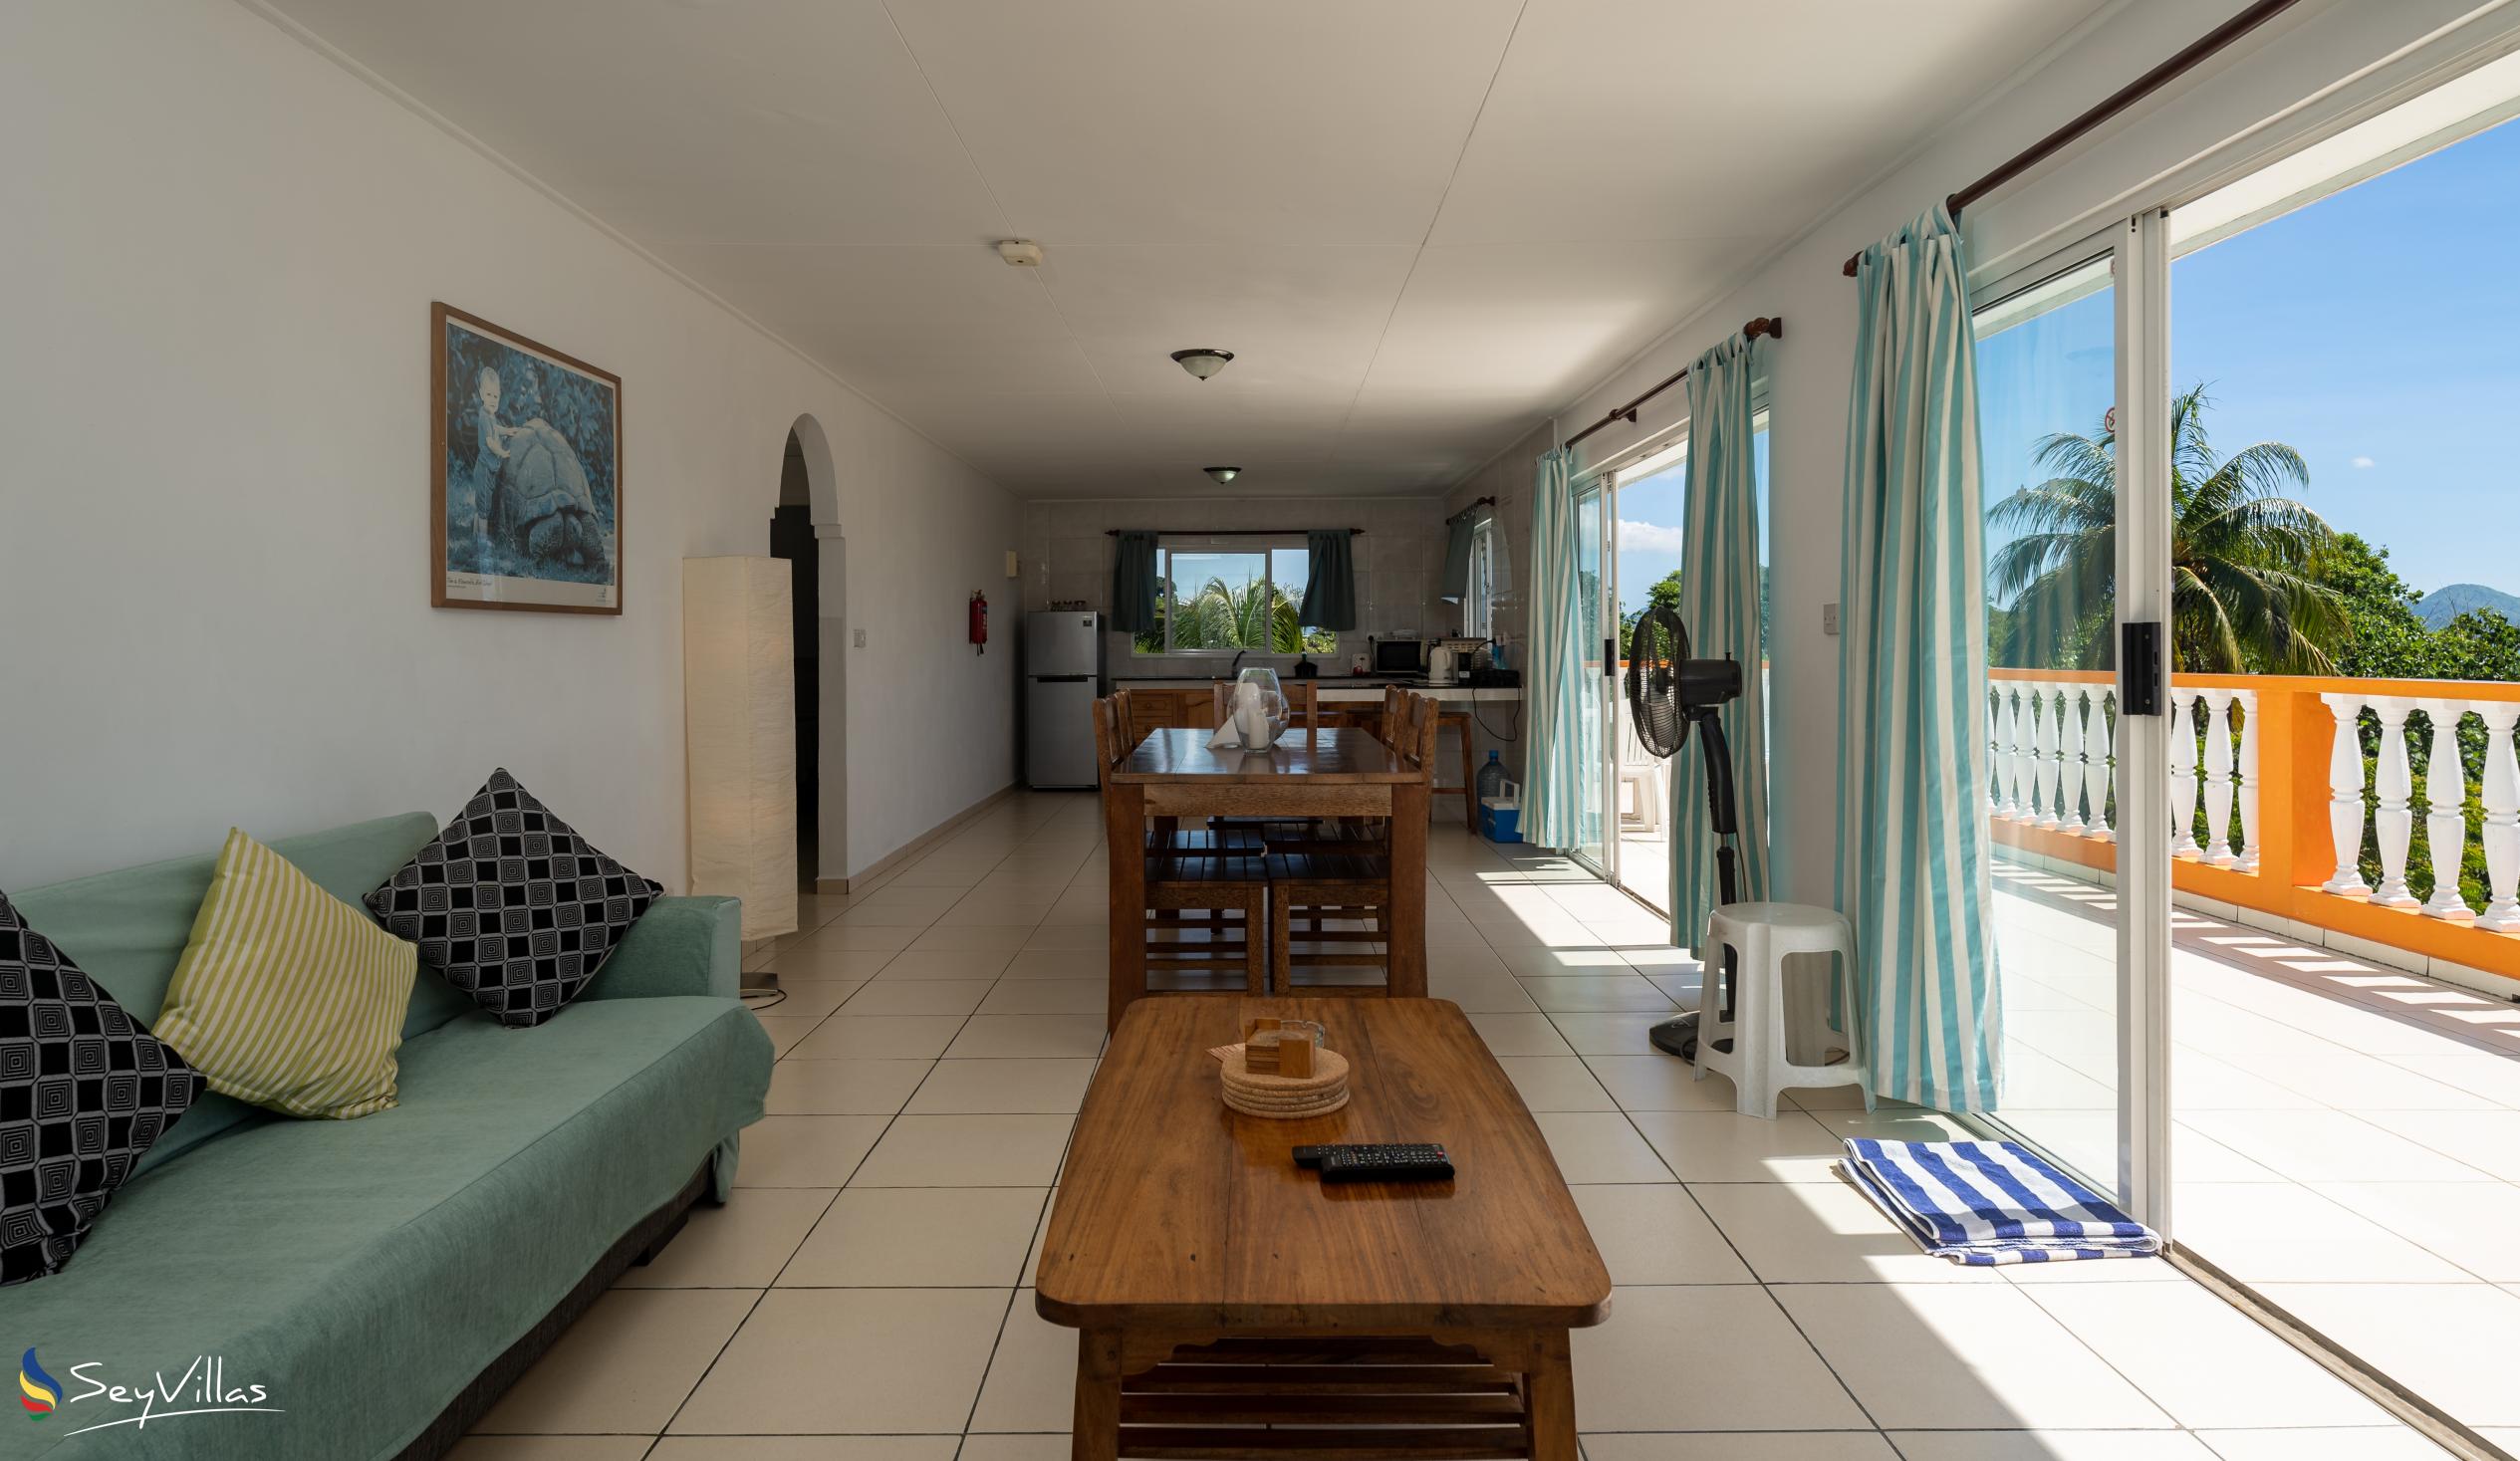 Foto 43: Chez Payet Self Catering - Appartamento con 2 camere Coco - Mahé (Seychelles)